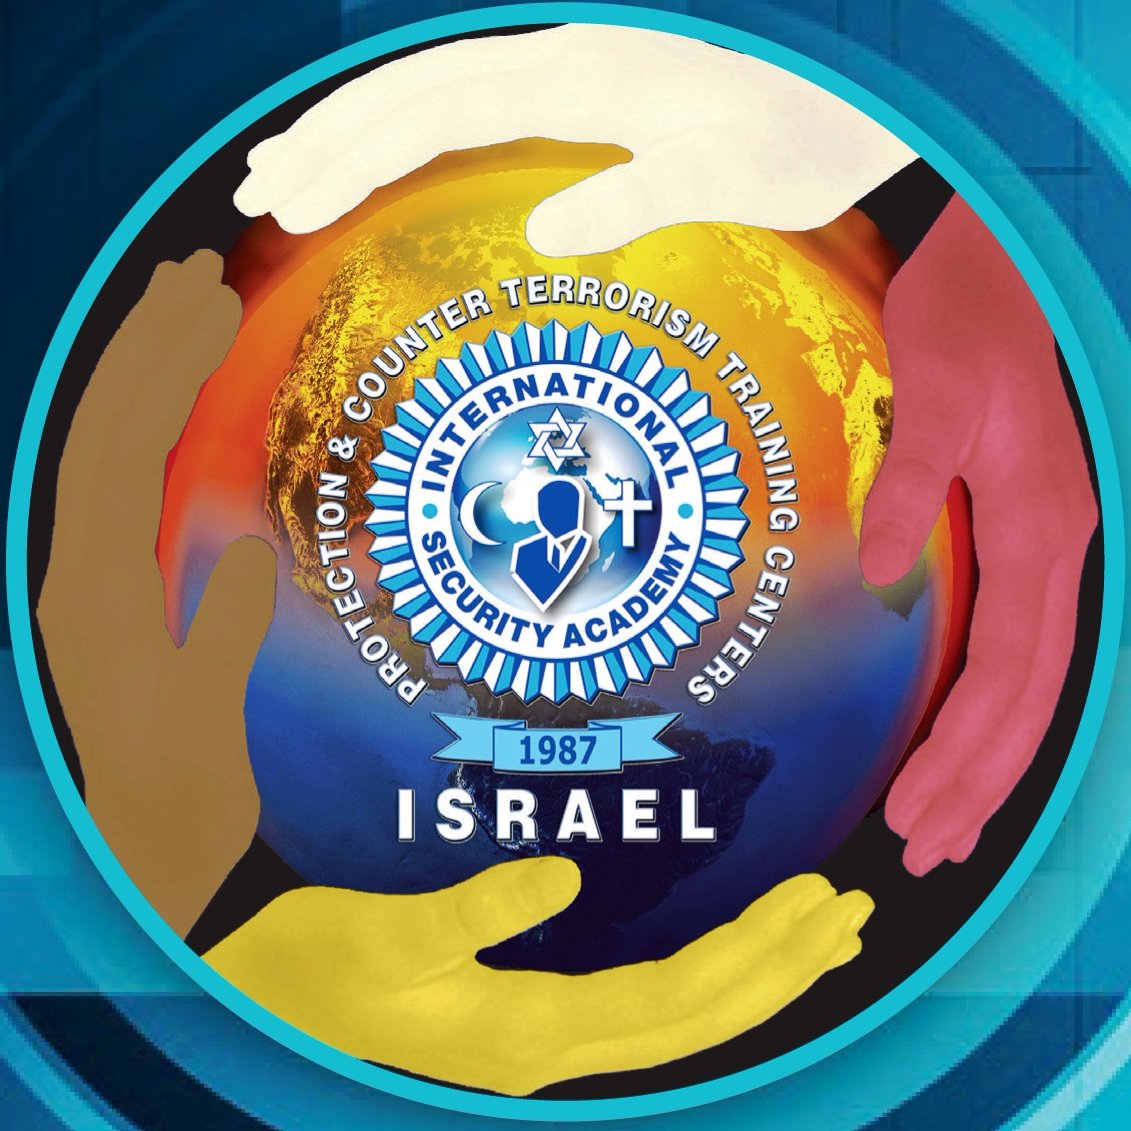 ISA – Israel se ha especializado en la formación y preparación de Agentes de Protección de Elite, Directivos e Instructores desde 1987